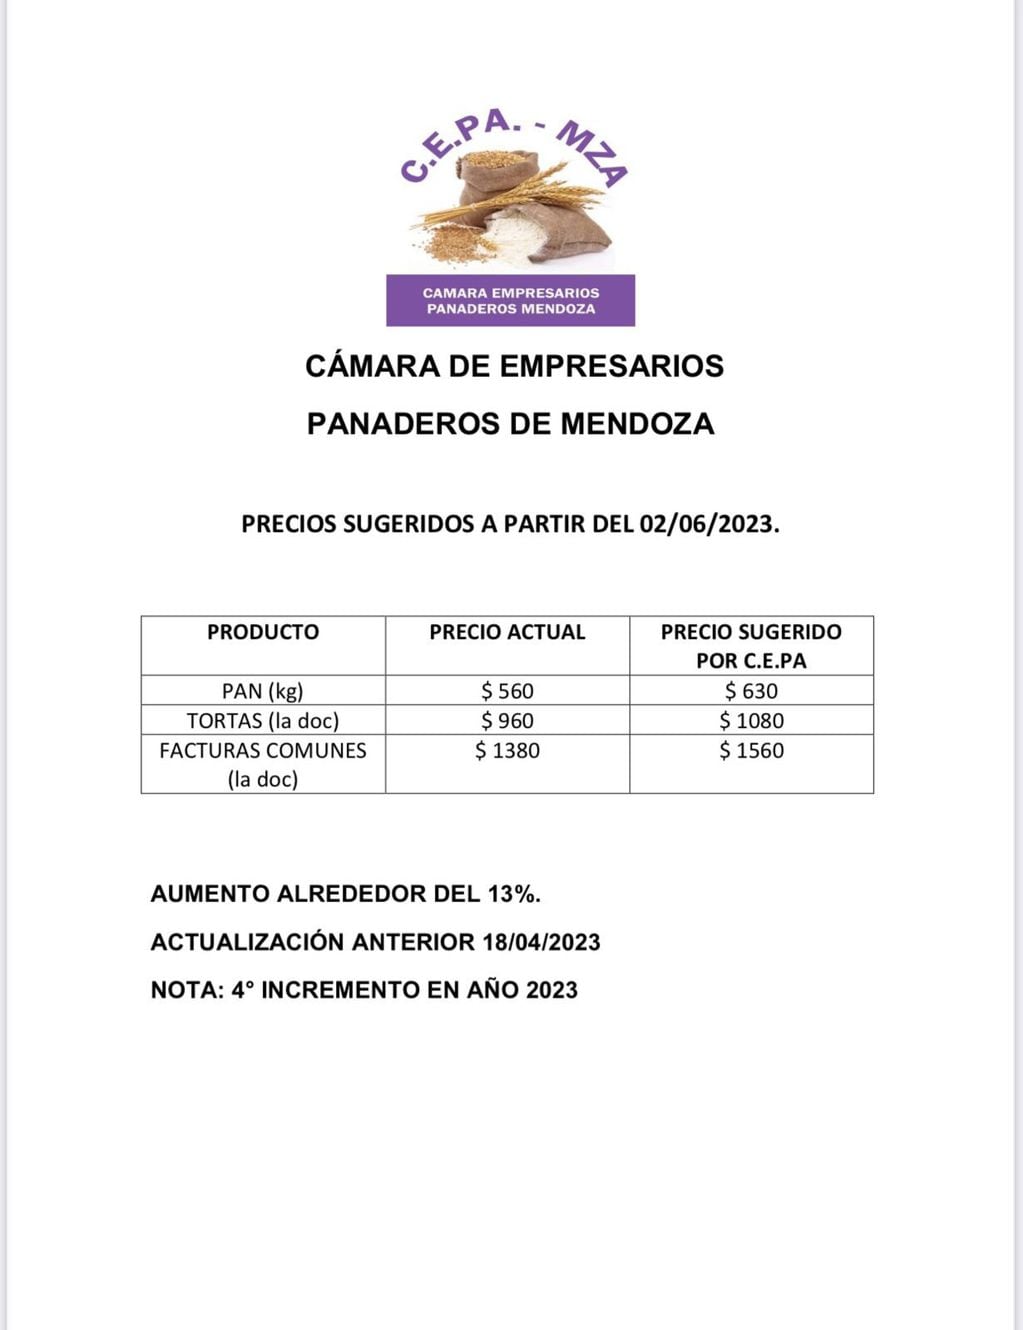 Cámara de Empresarios Panaderos de Mendoza (Precios sugeridos 2 de junio 2023)